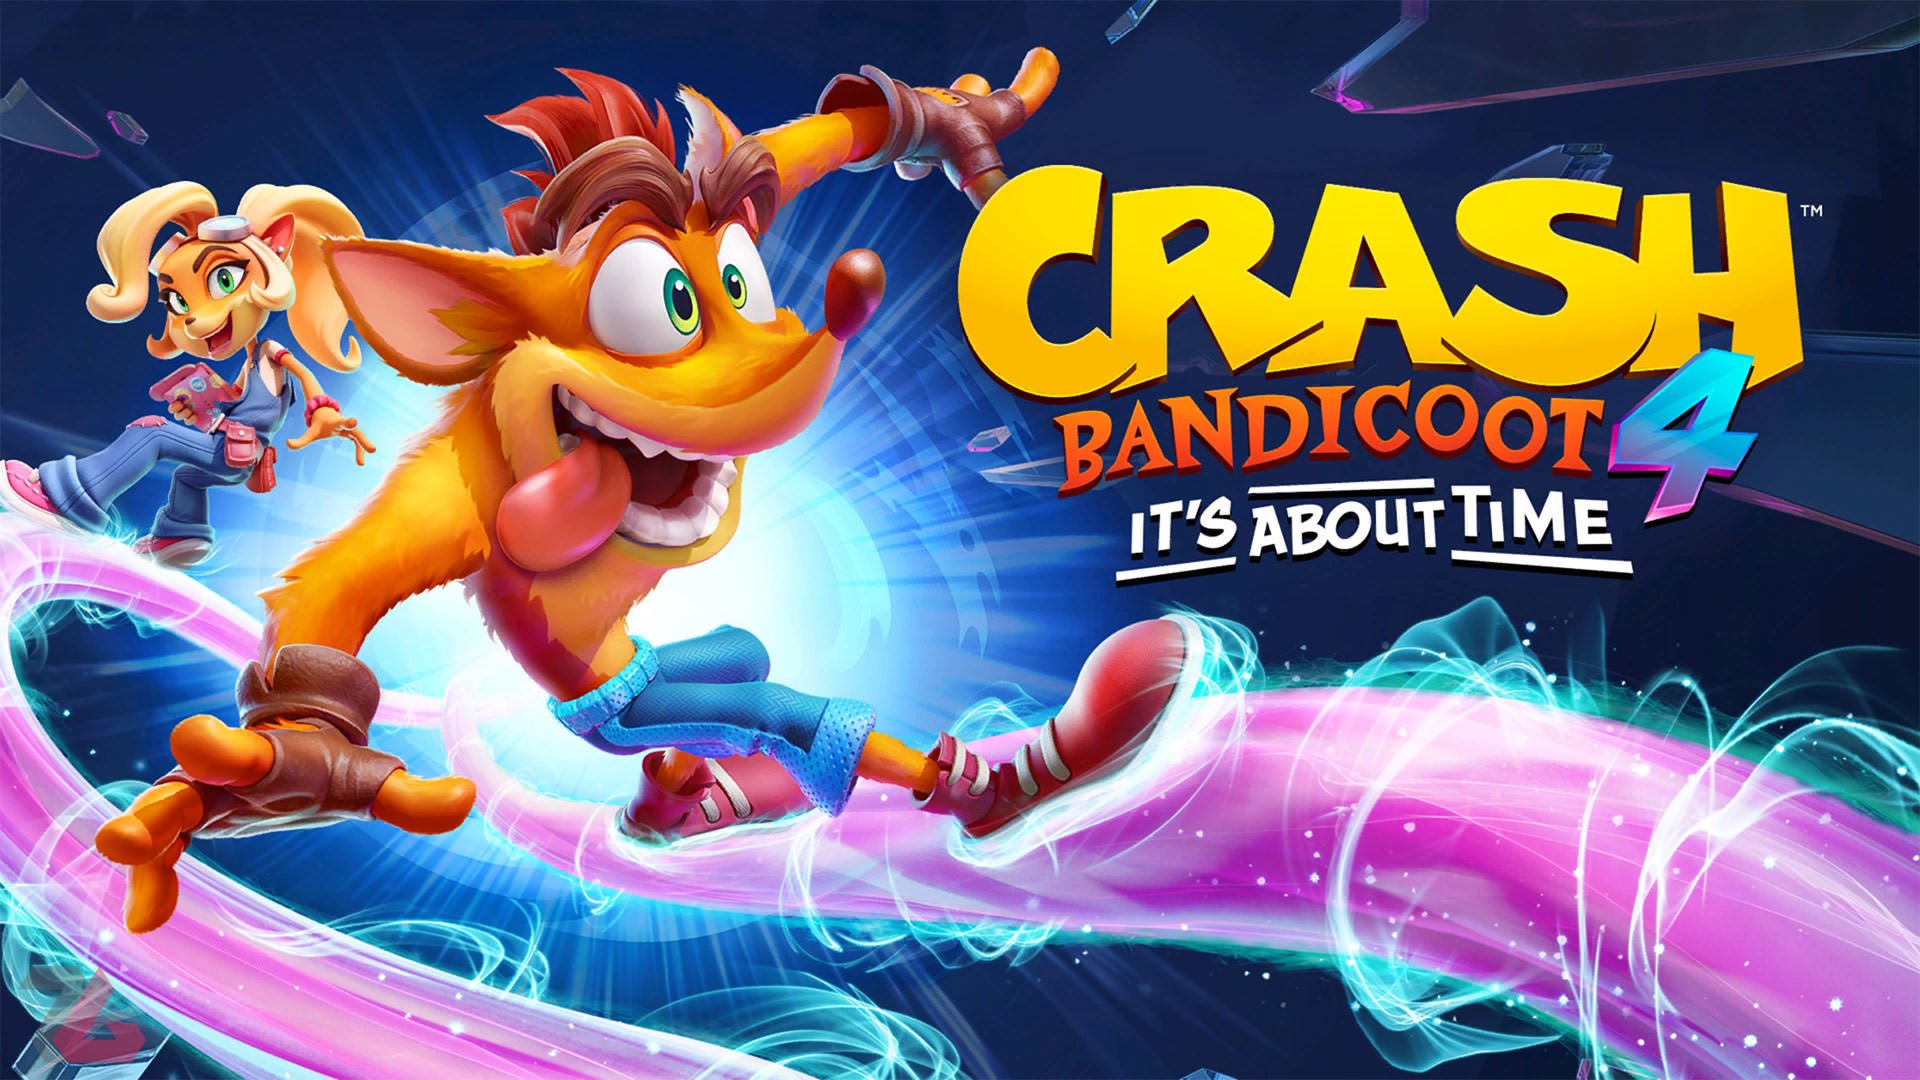 خرید بازی Crash Bandicoot 4: It's About Time - کراش باندیکوت 4 پلی استیشن PS4 , PS5 با قیمت مناسب همراه نقد و بررسی